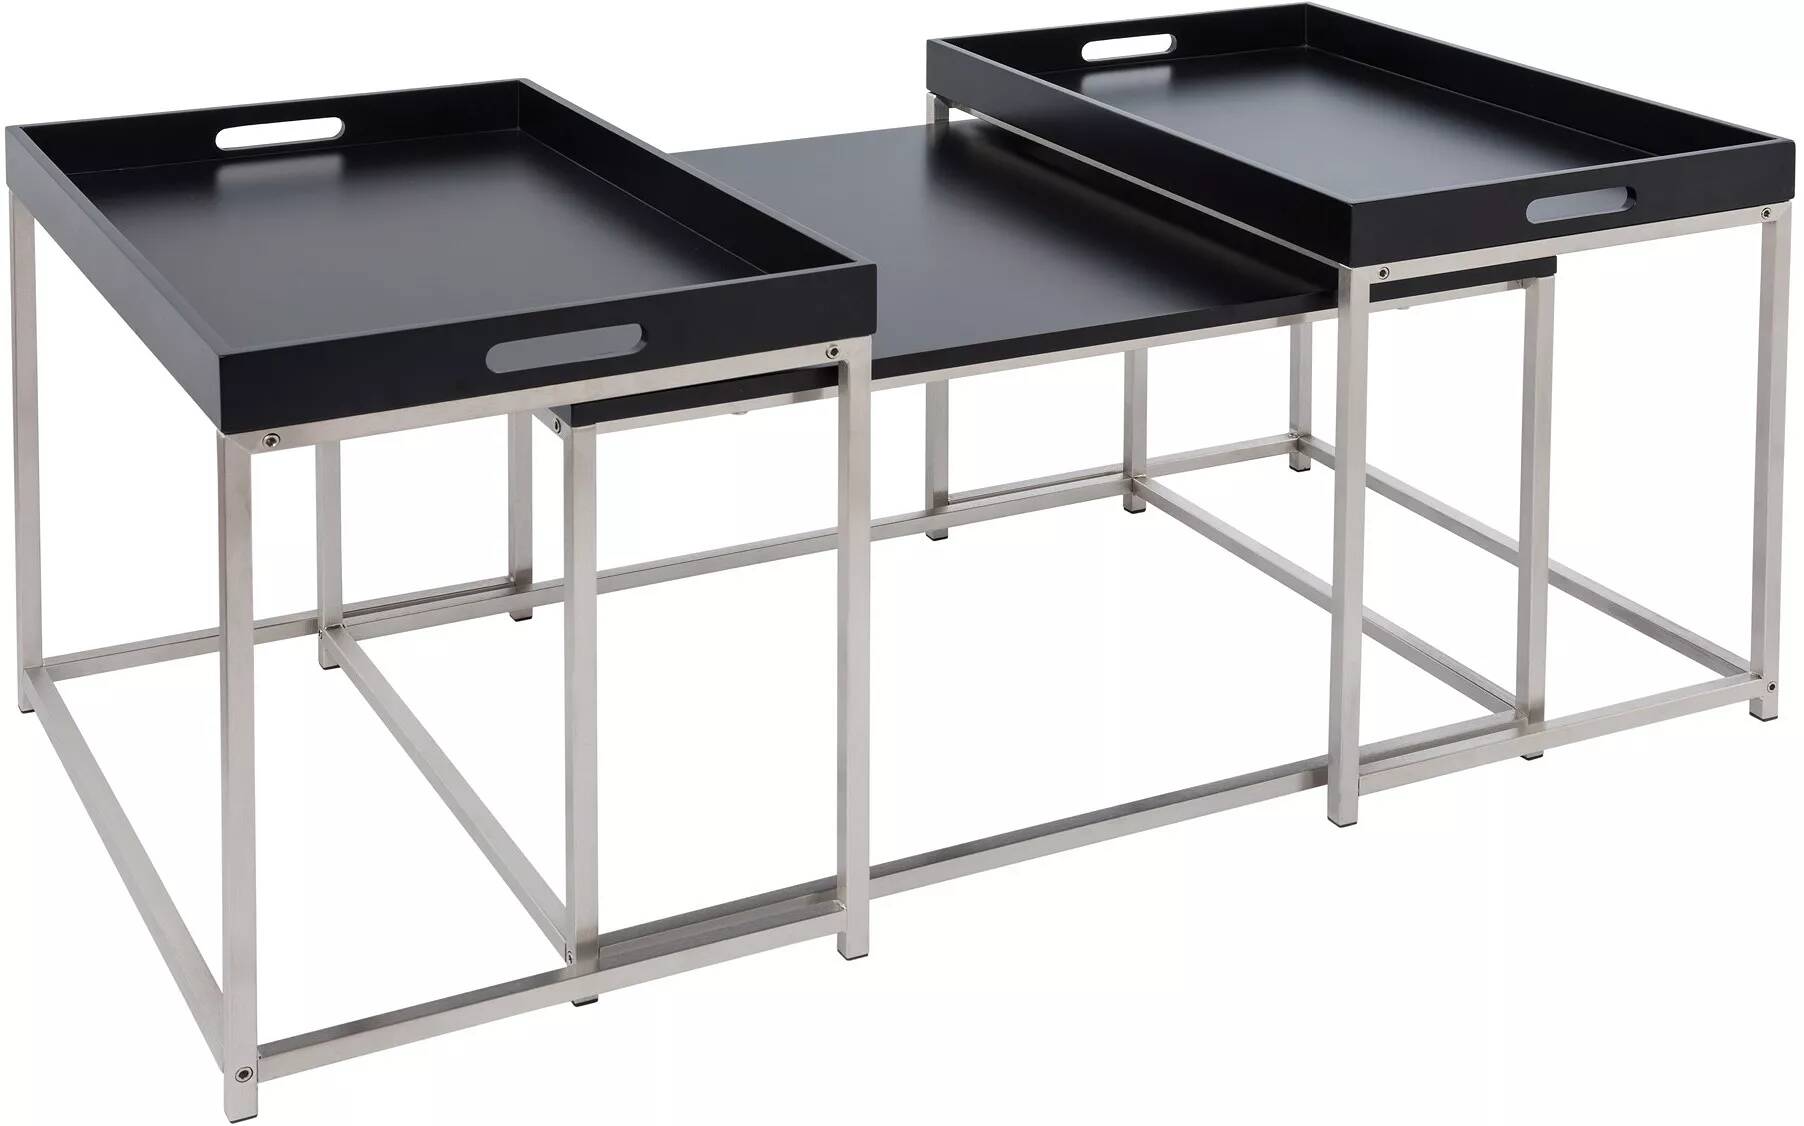 Set de 3 tables basses gigognes avec plateaux amovibles en bois noir et acier chromé